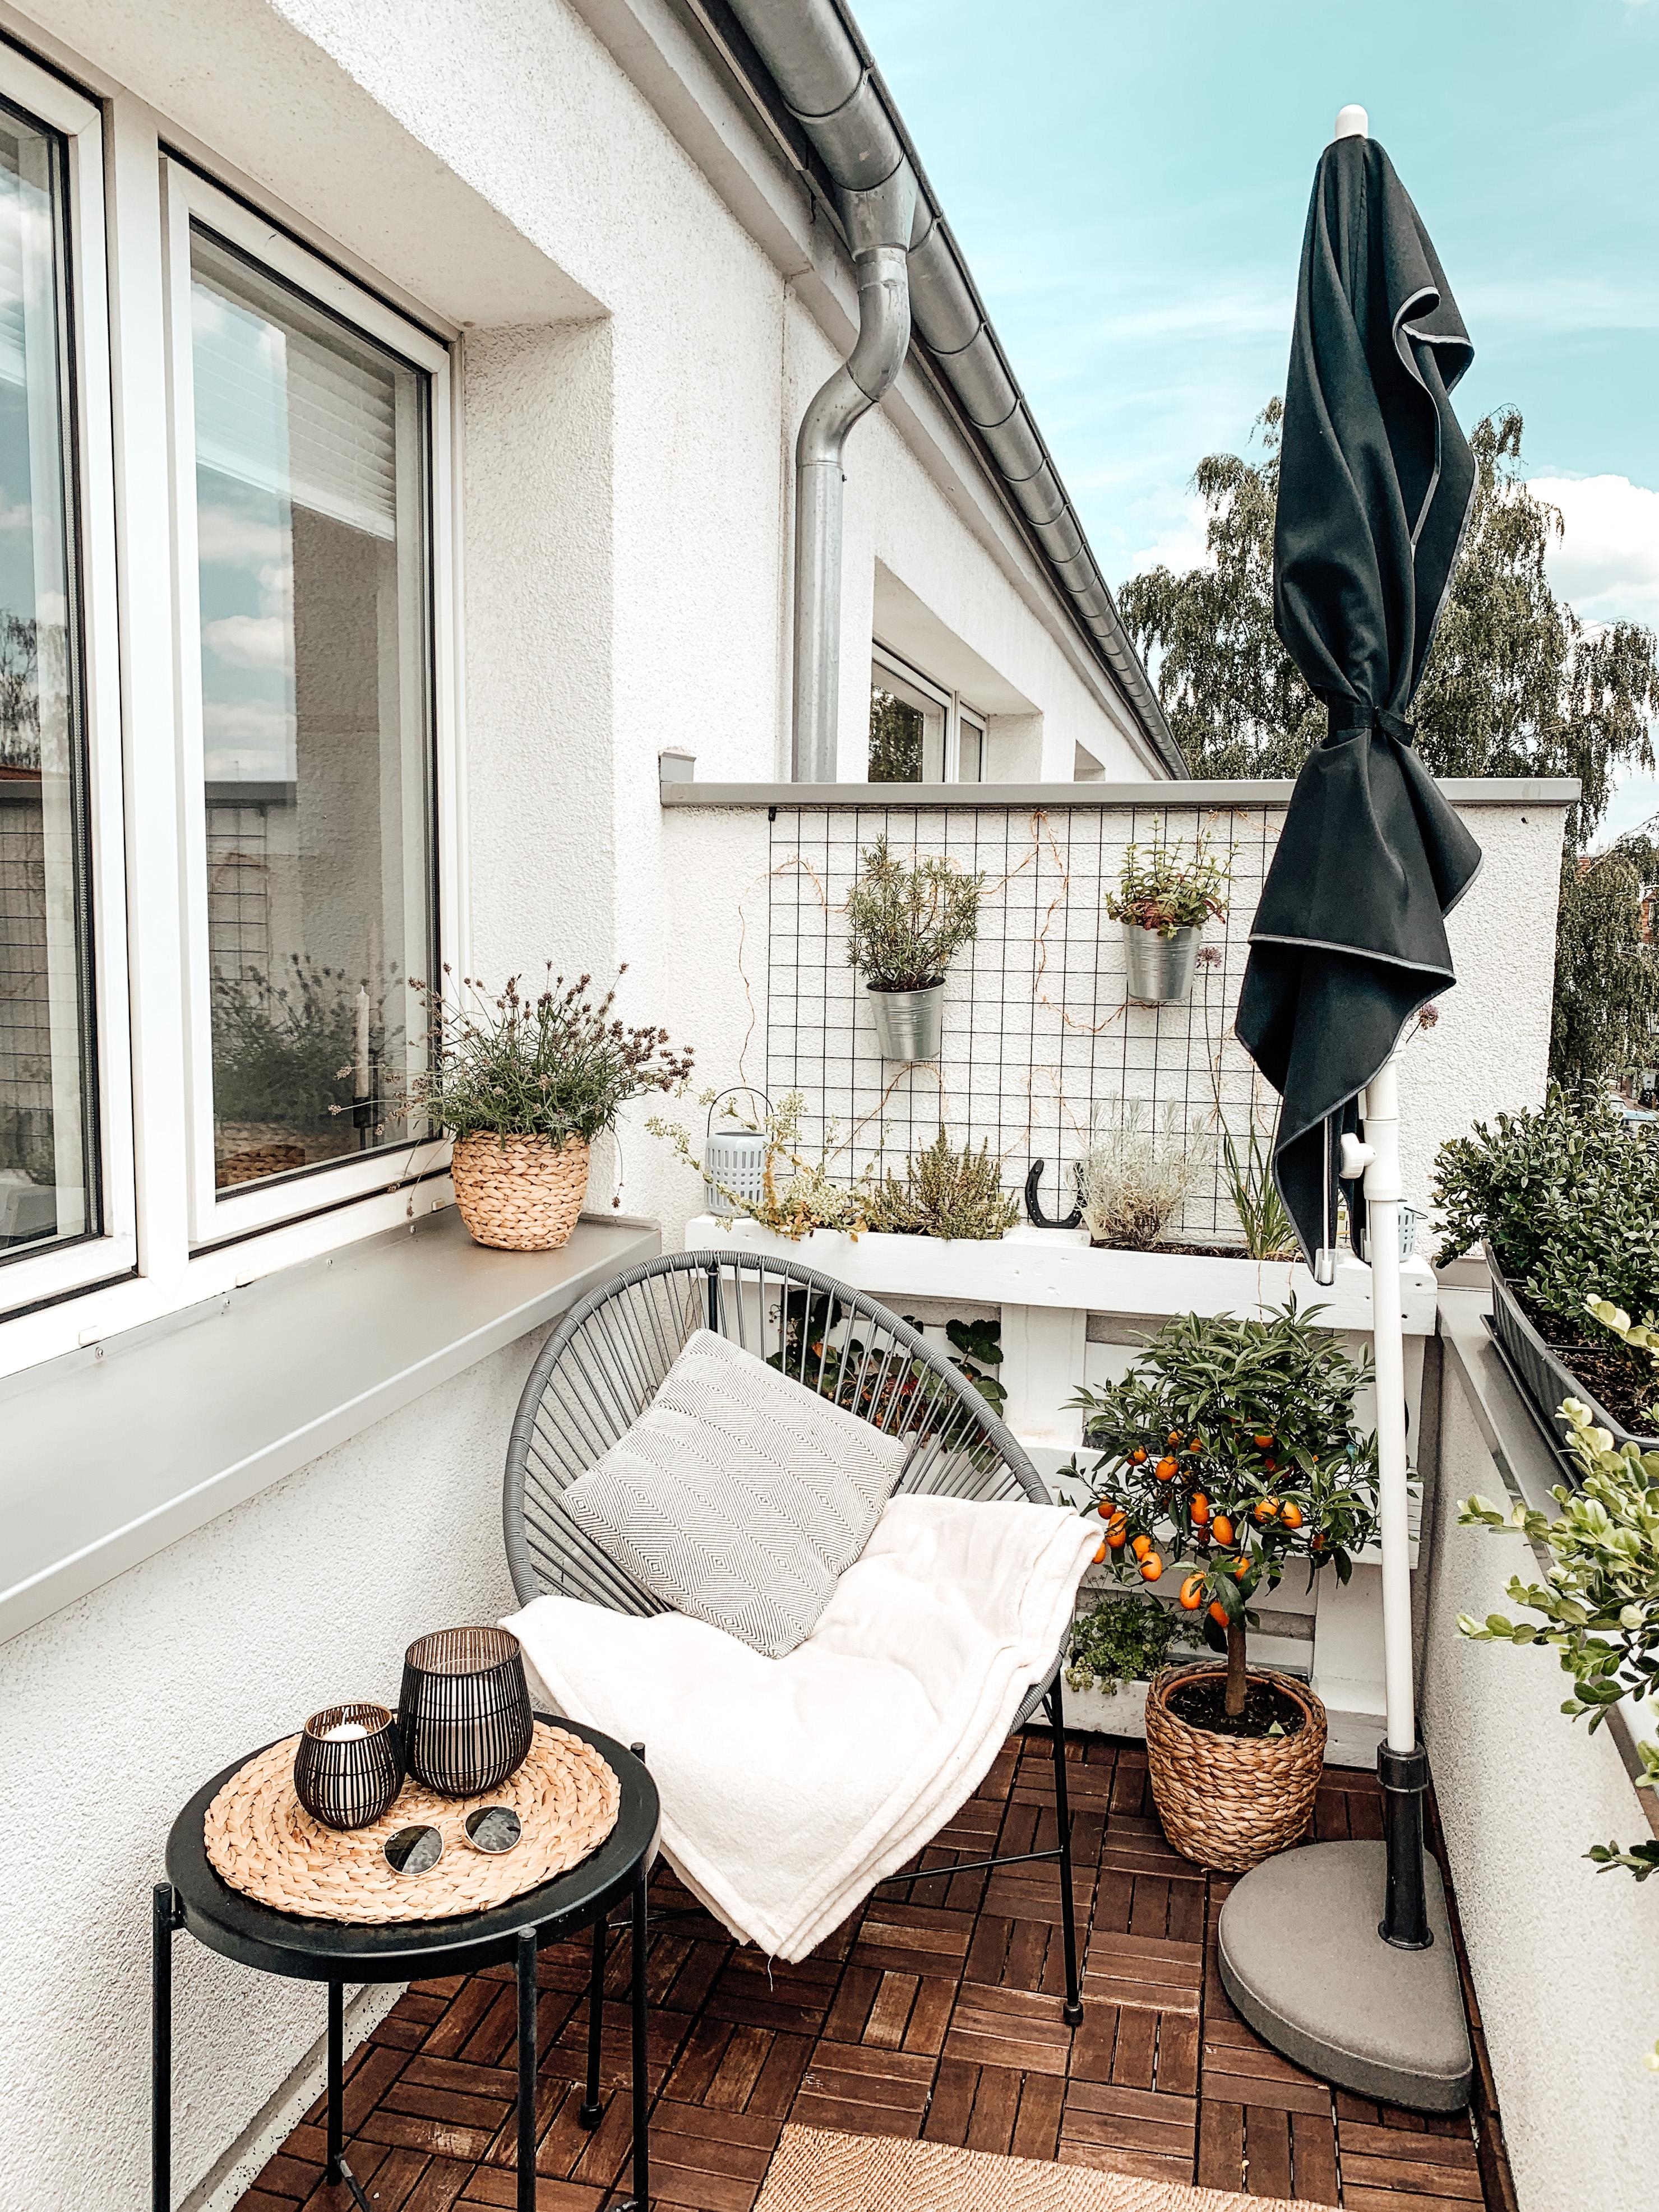 Summervibes! #balkon #sommerliebe #sonnenschein #outdoor 